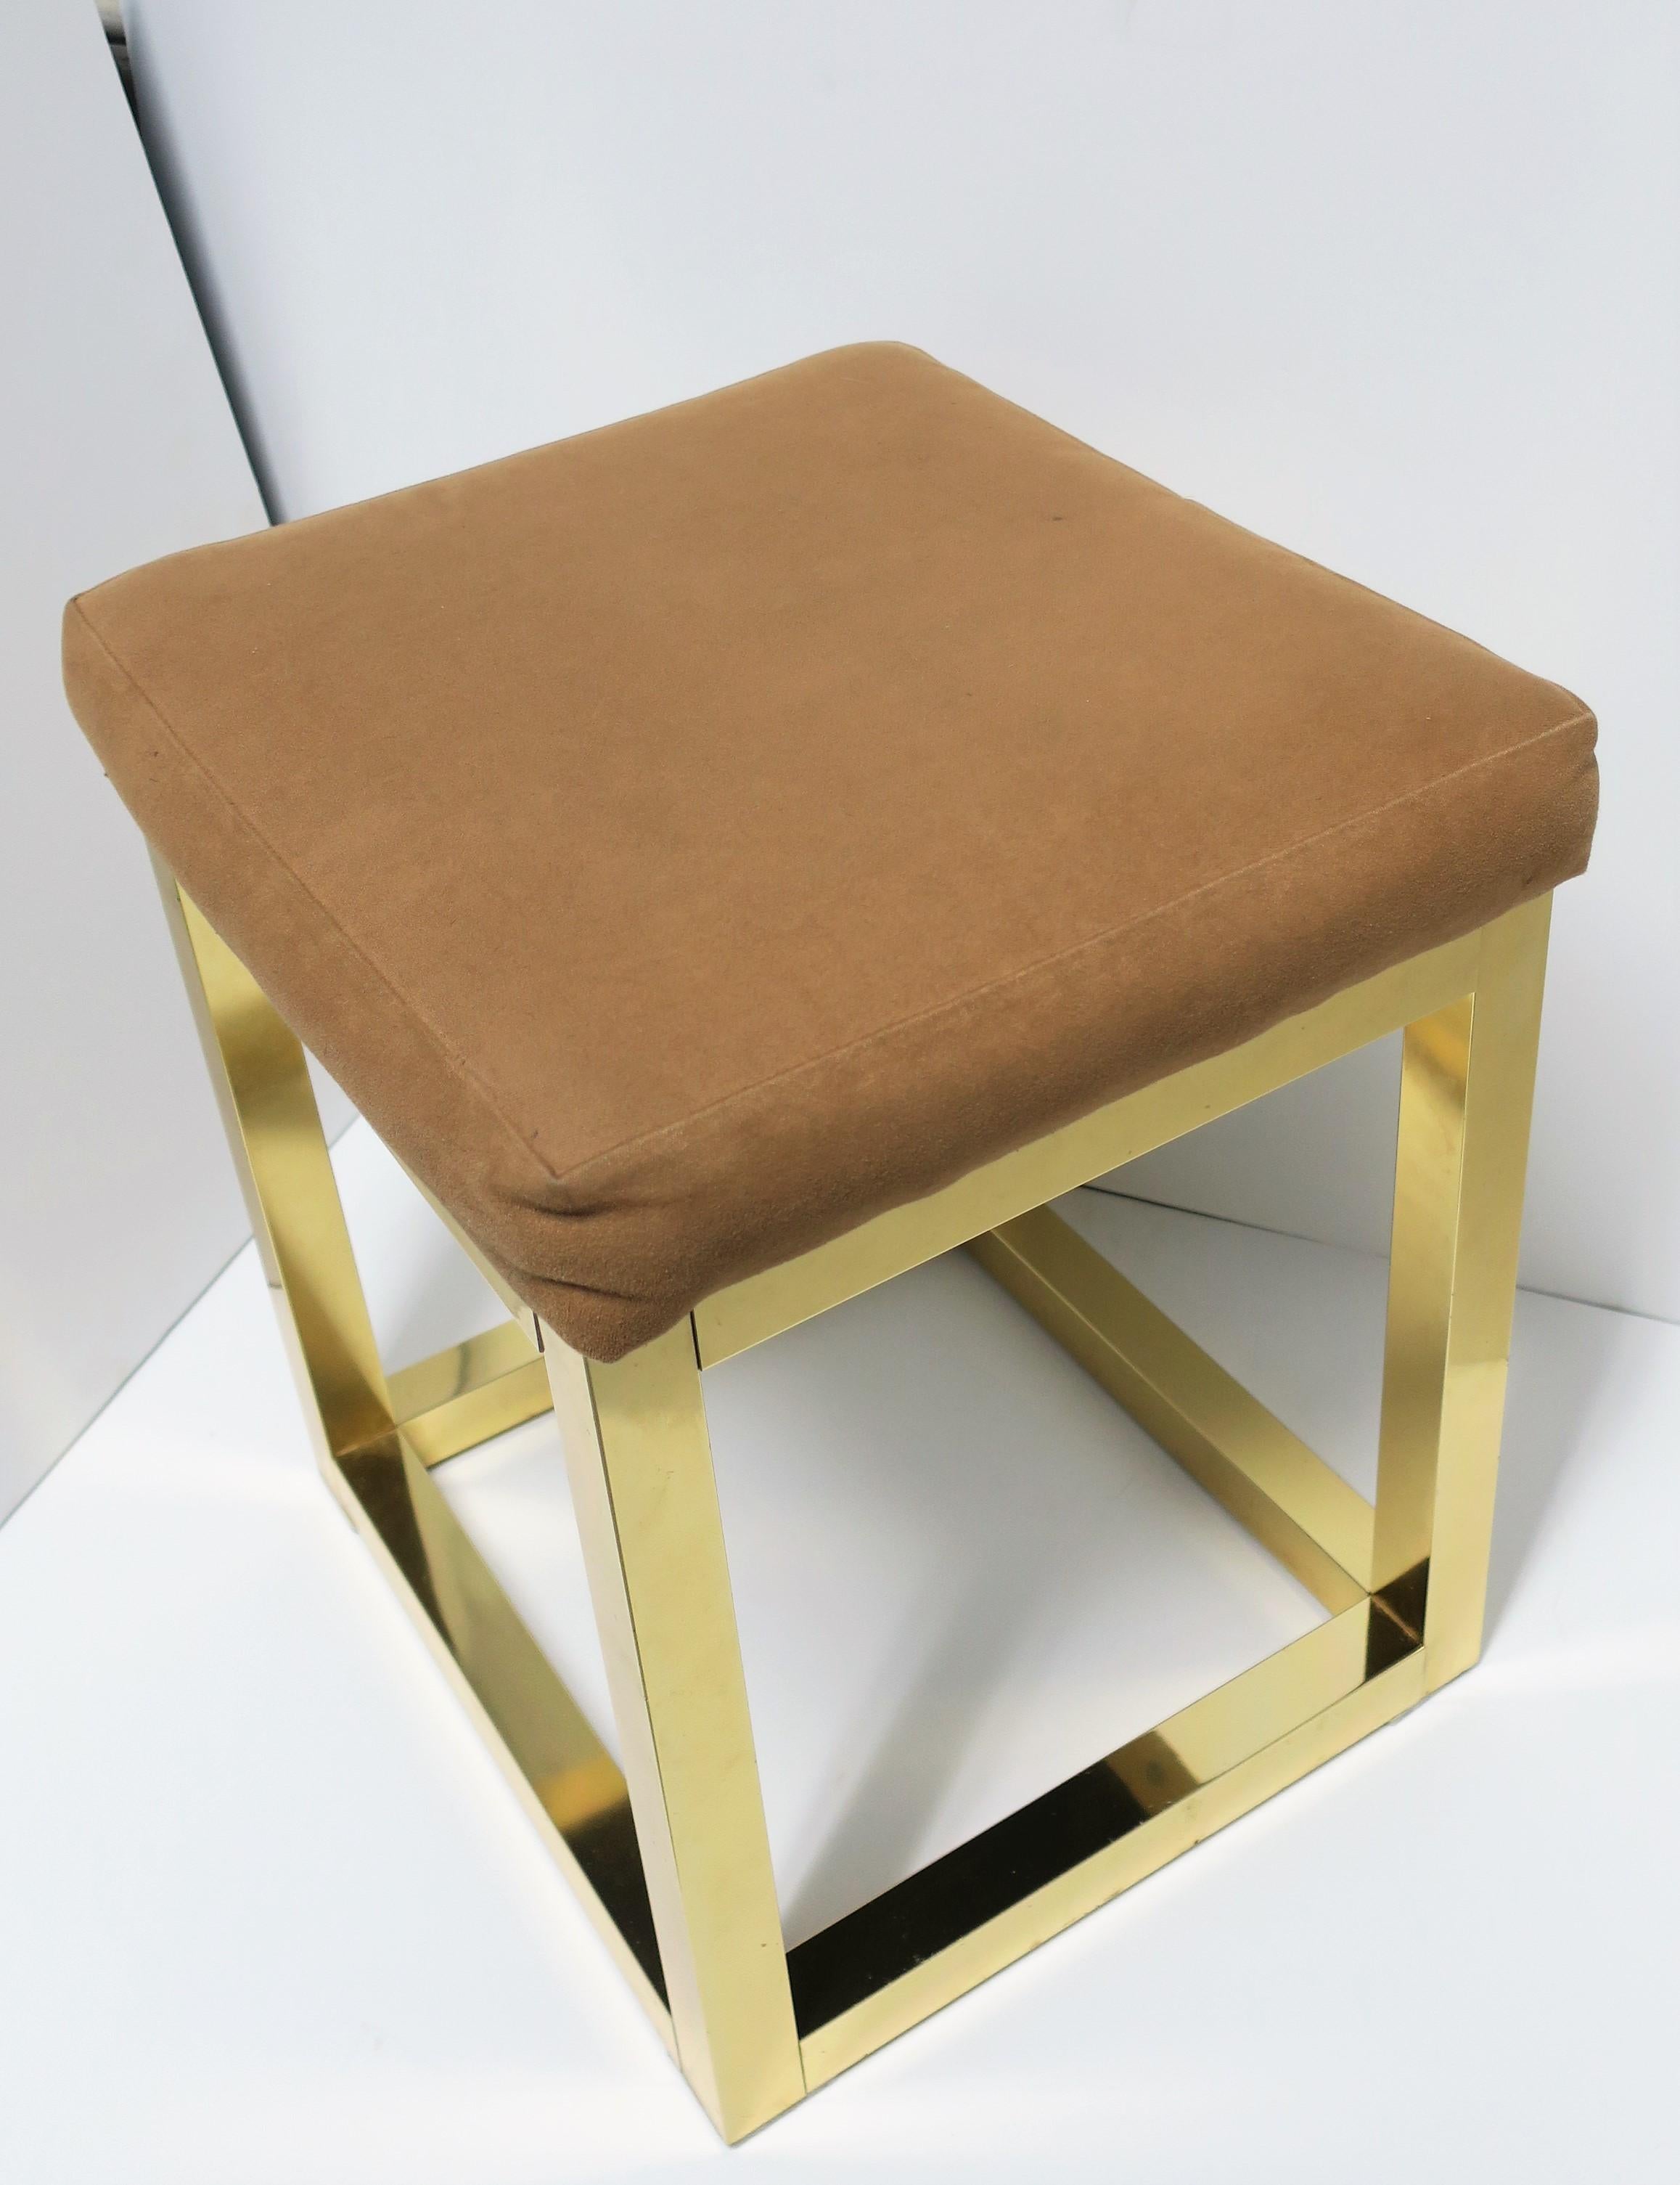 Eine moderne Messingbank oder ein Hocker mit gepolstertem Sitzkissen im Stil des Designers Paul Evans, um 1970er Jahre.

Abmessungen: 13.75